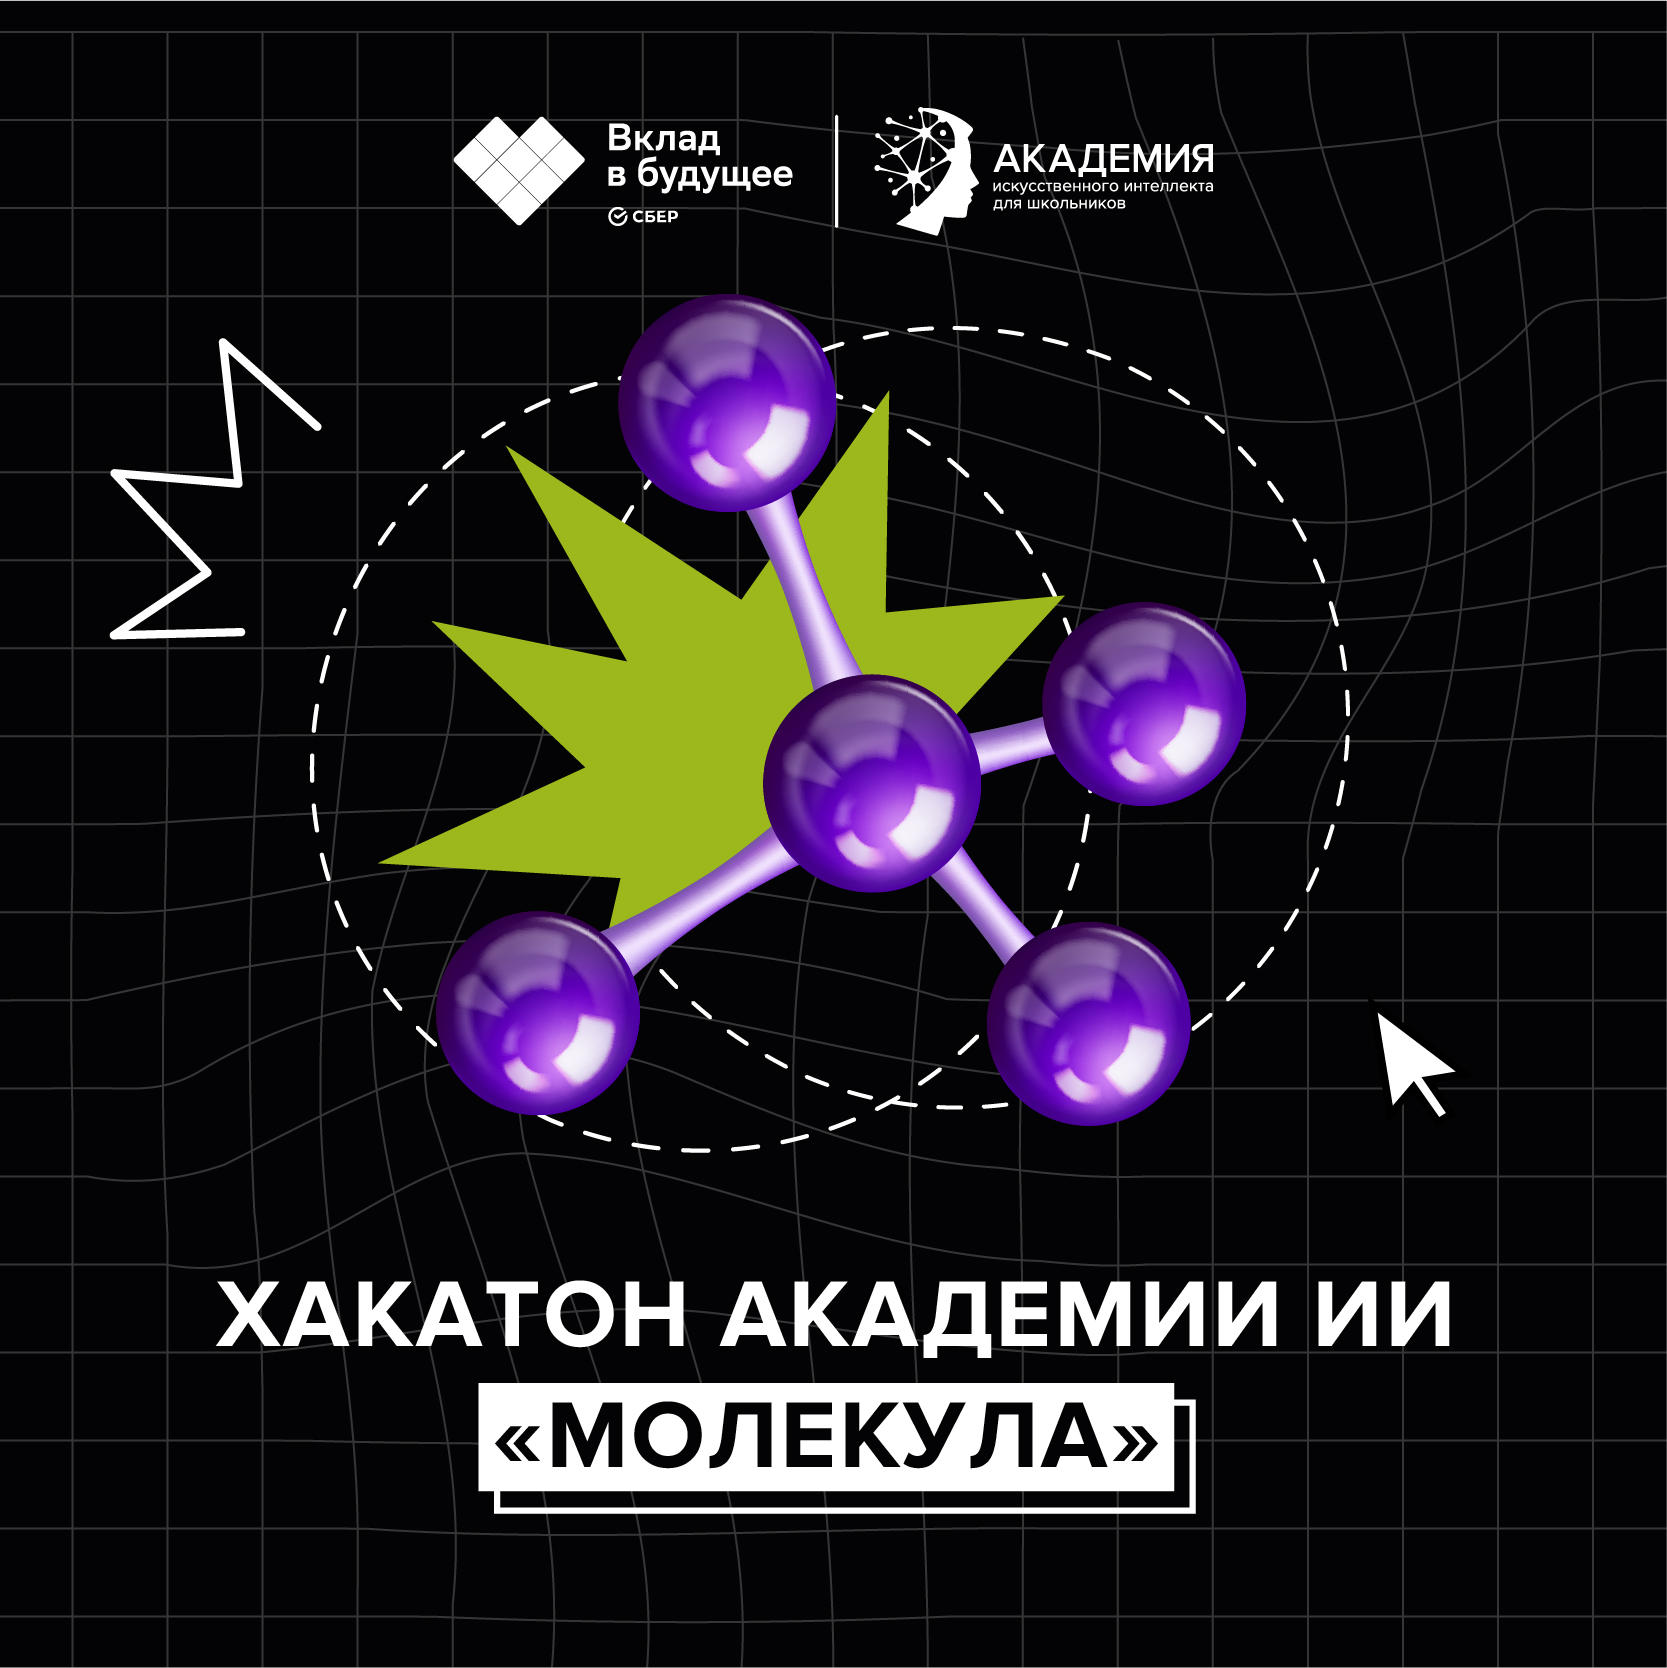 Хакатон Академии ИИ «Молекула»: призовой фонд – 1 000 000 рублей.